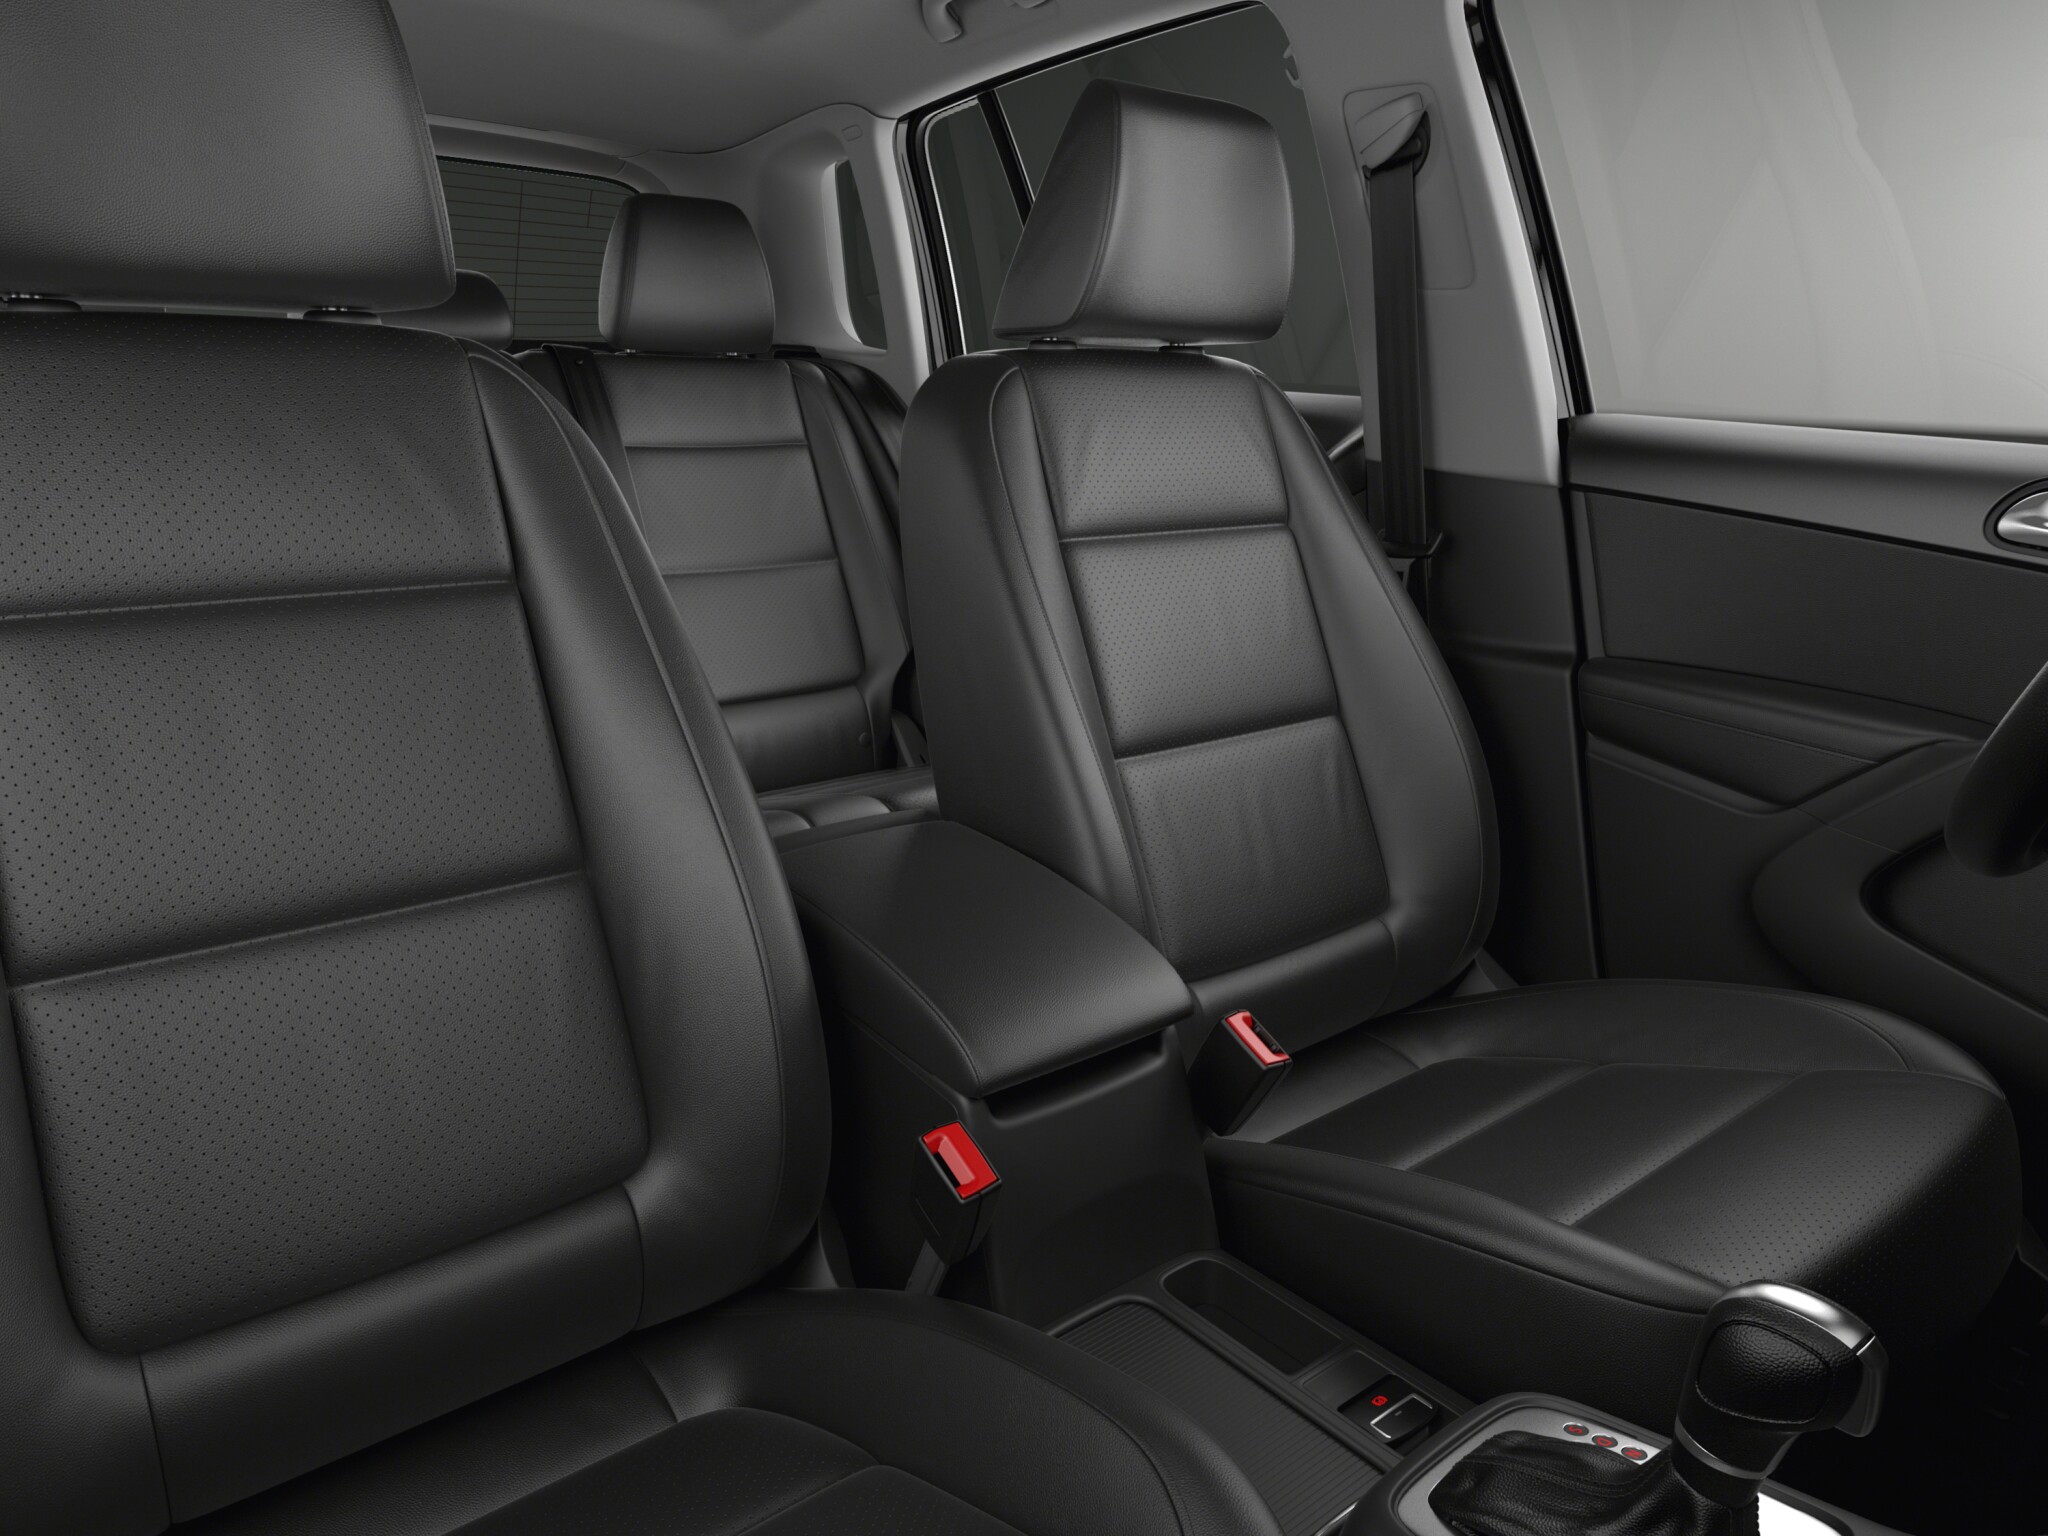 Volkswagen Tiguan Comfortline Diesel interior seat view